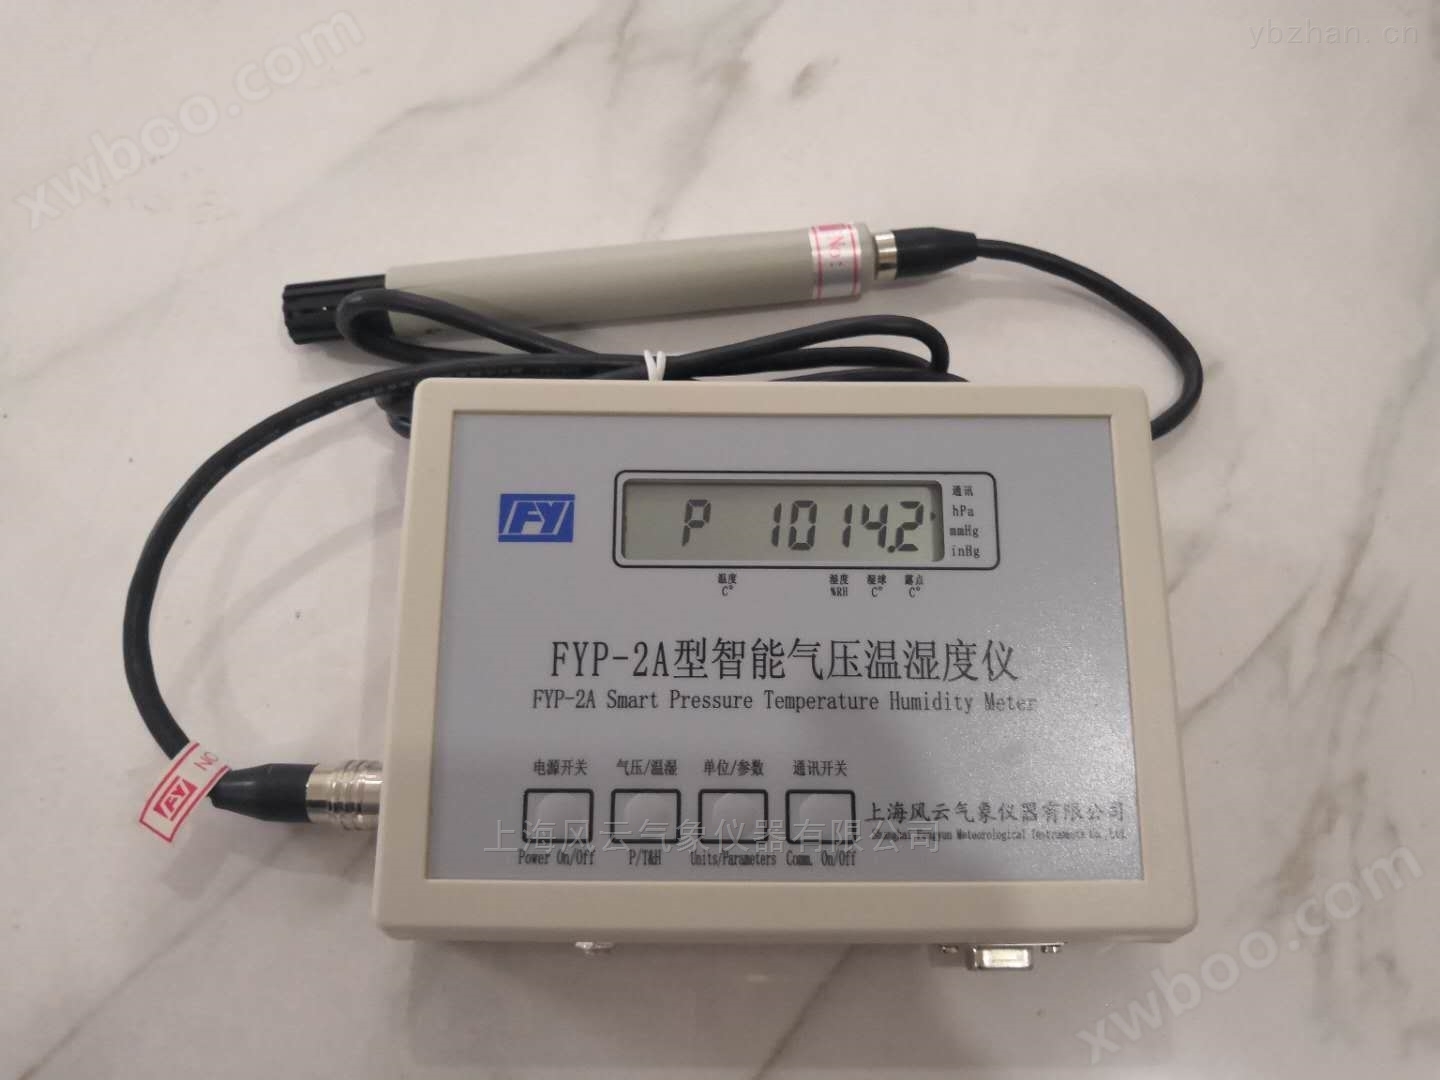 FYP-2A型智能气压温湿度仪